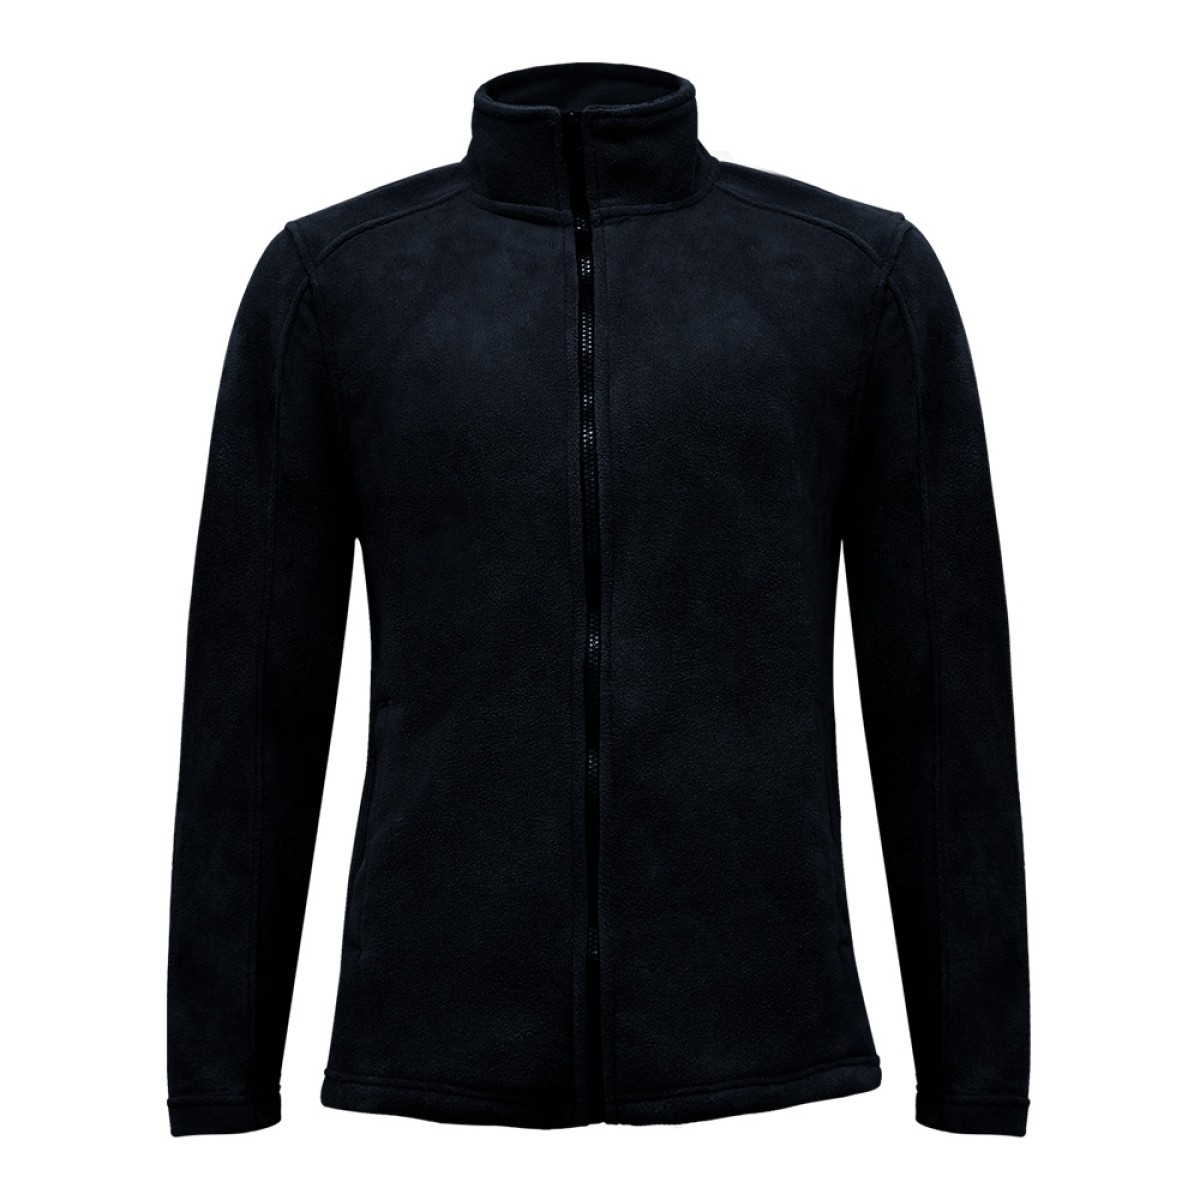 men-fleece-thick-layer-jacket-kfj95708-8a